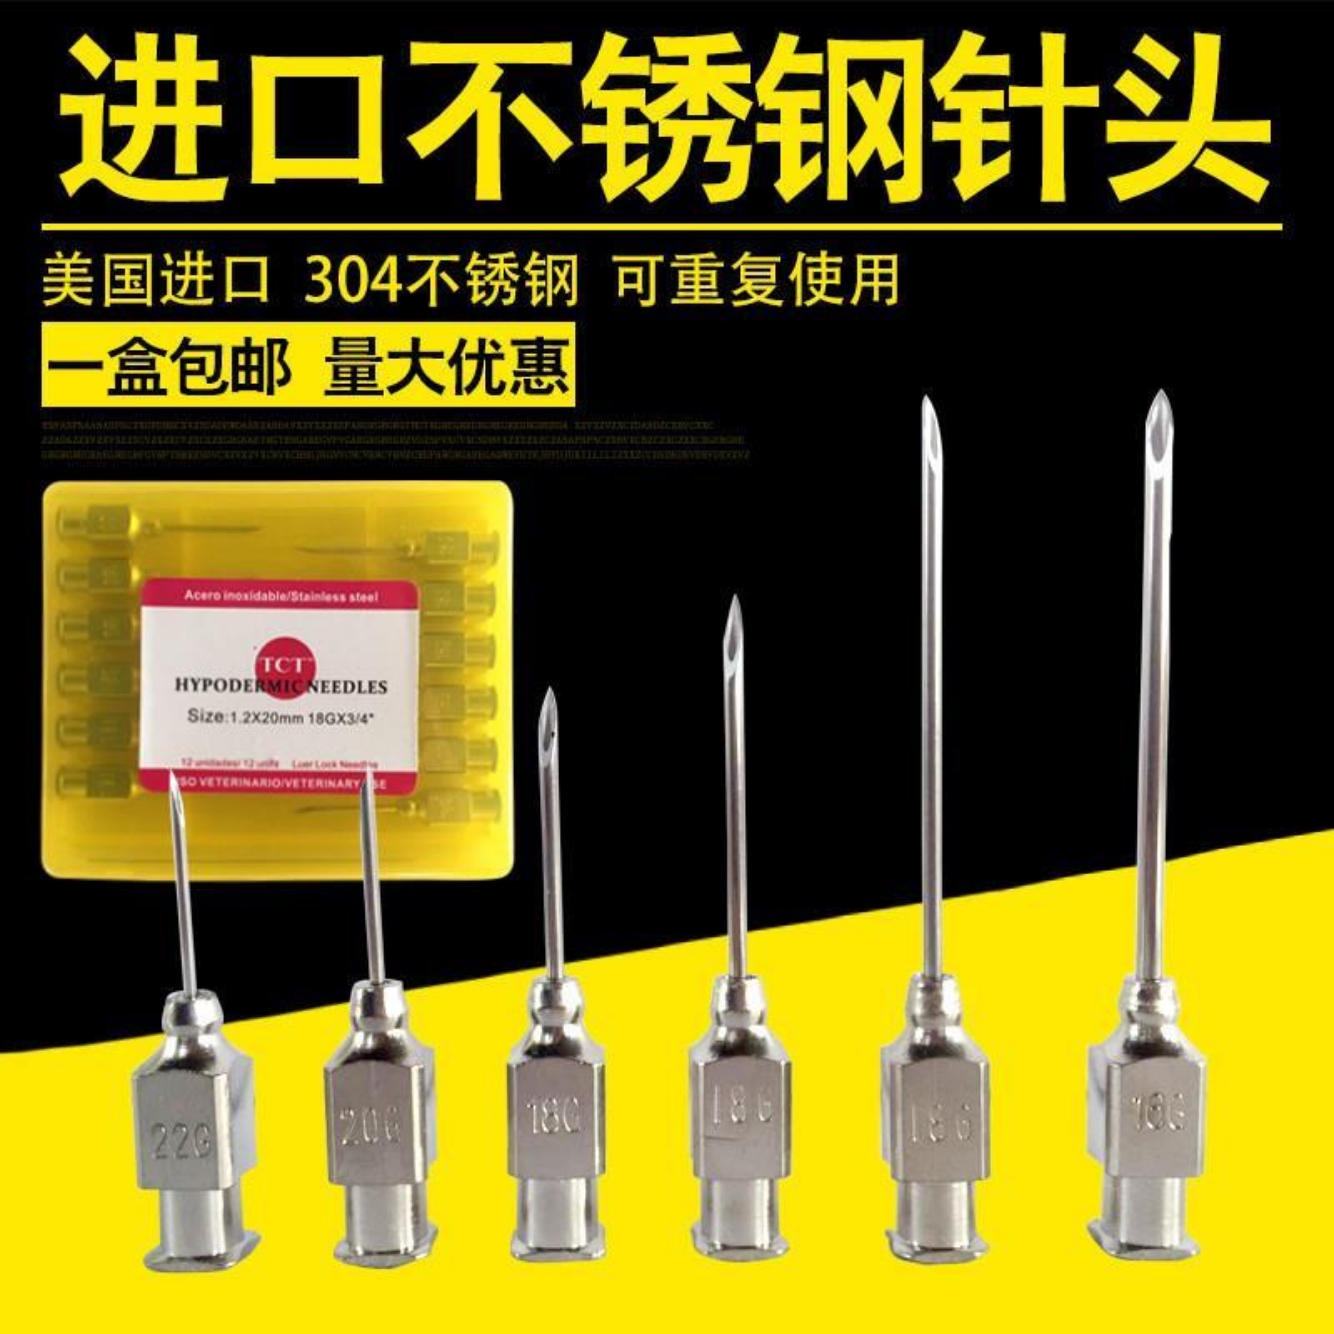 注射器代理-伸缩式针头注射器-云南仟龙医疗